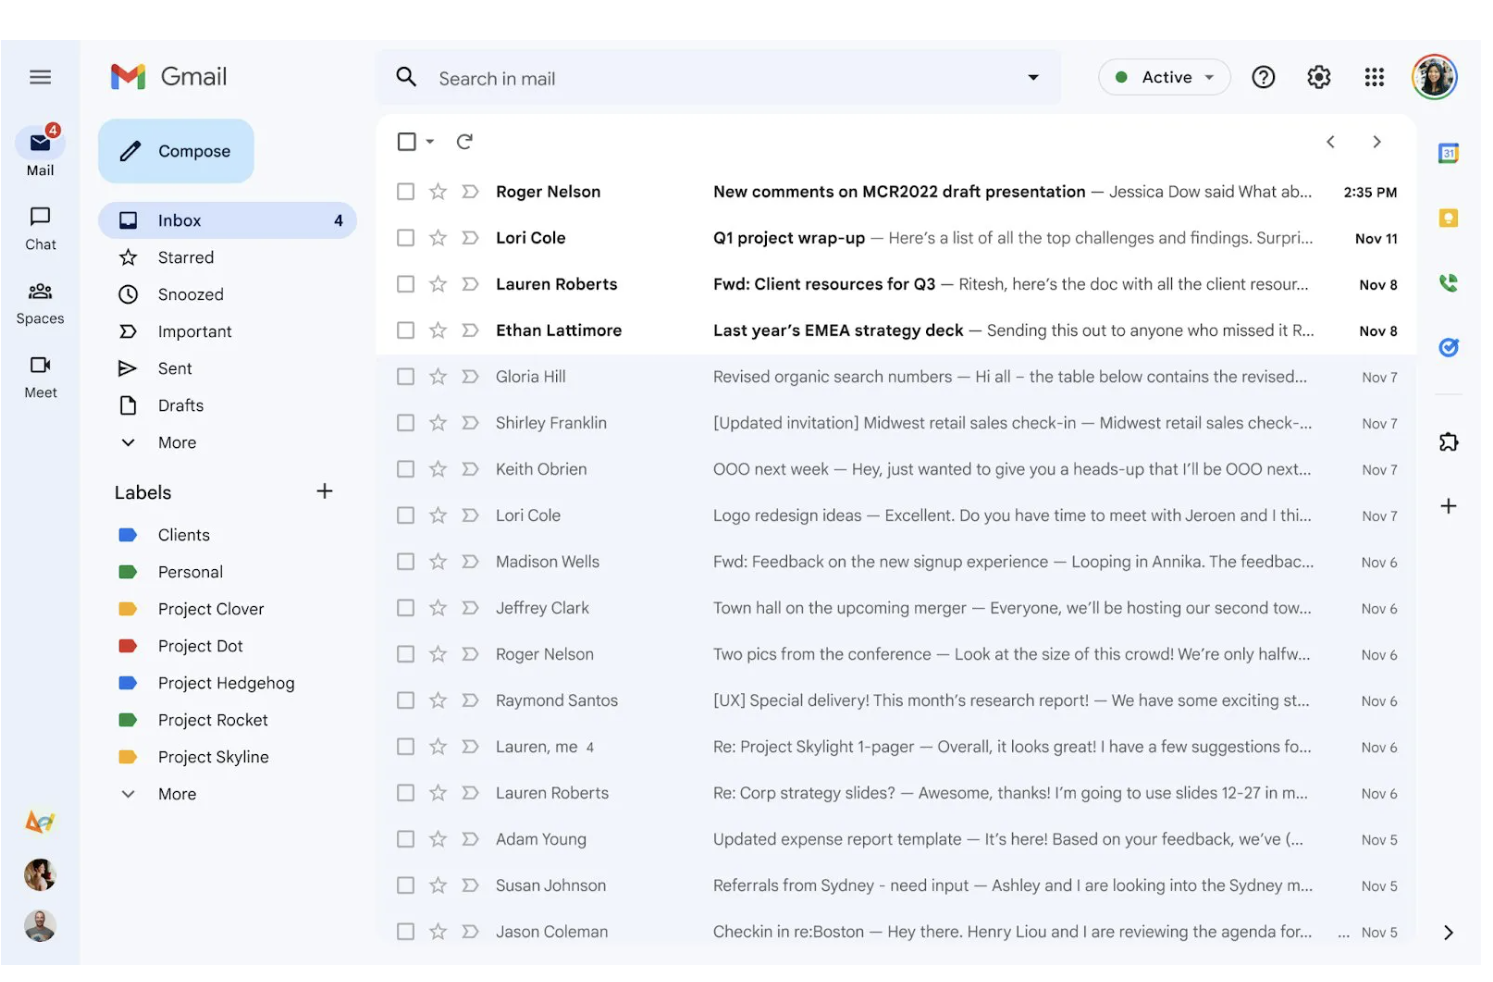 Giao diện người dùng Gmail mới đặt các nút cho Gmail, Trò chuyện, Không gian và Gặp gỡ trên một đường ray. Hình ảnh: Google